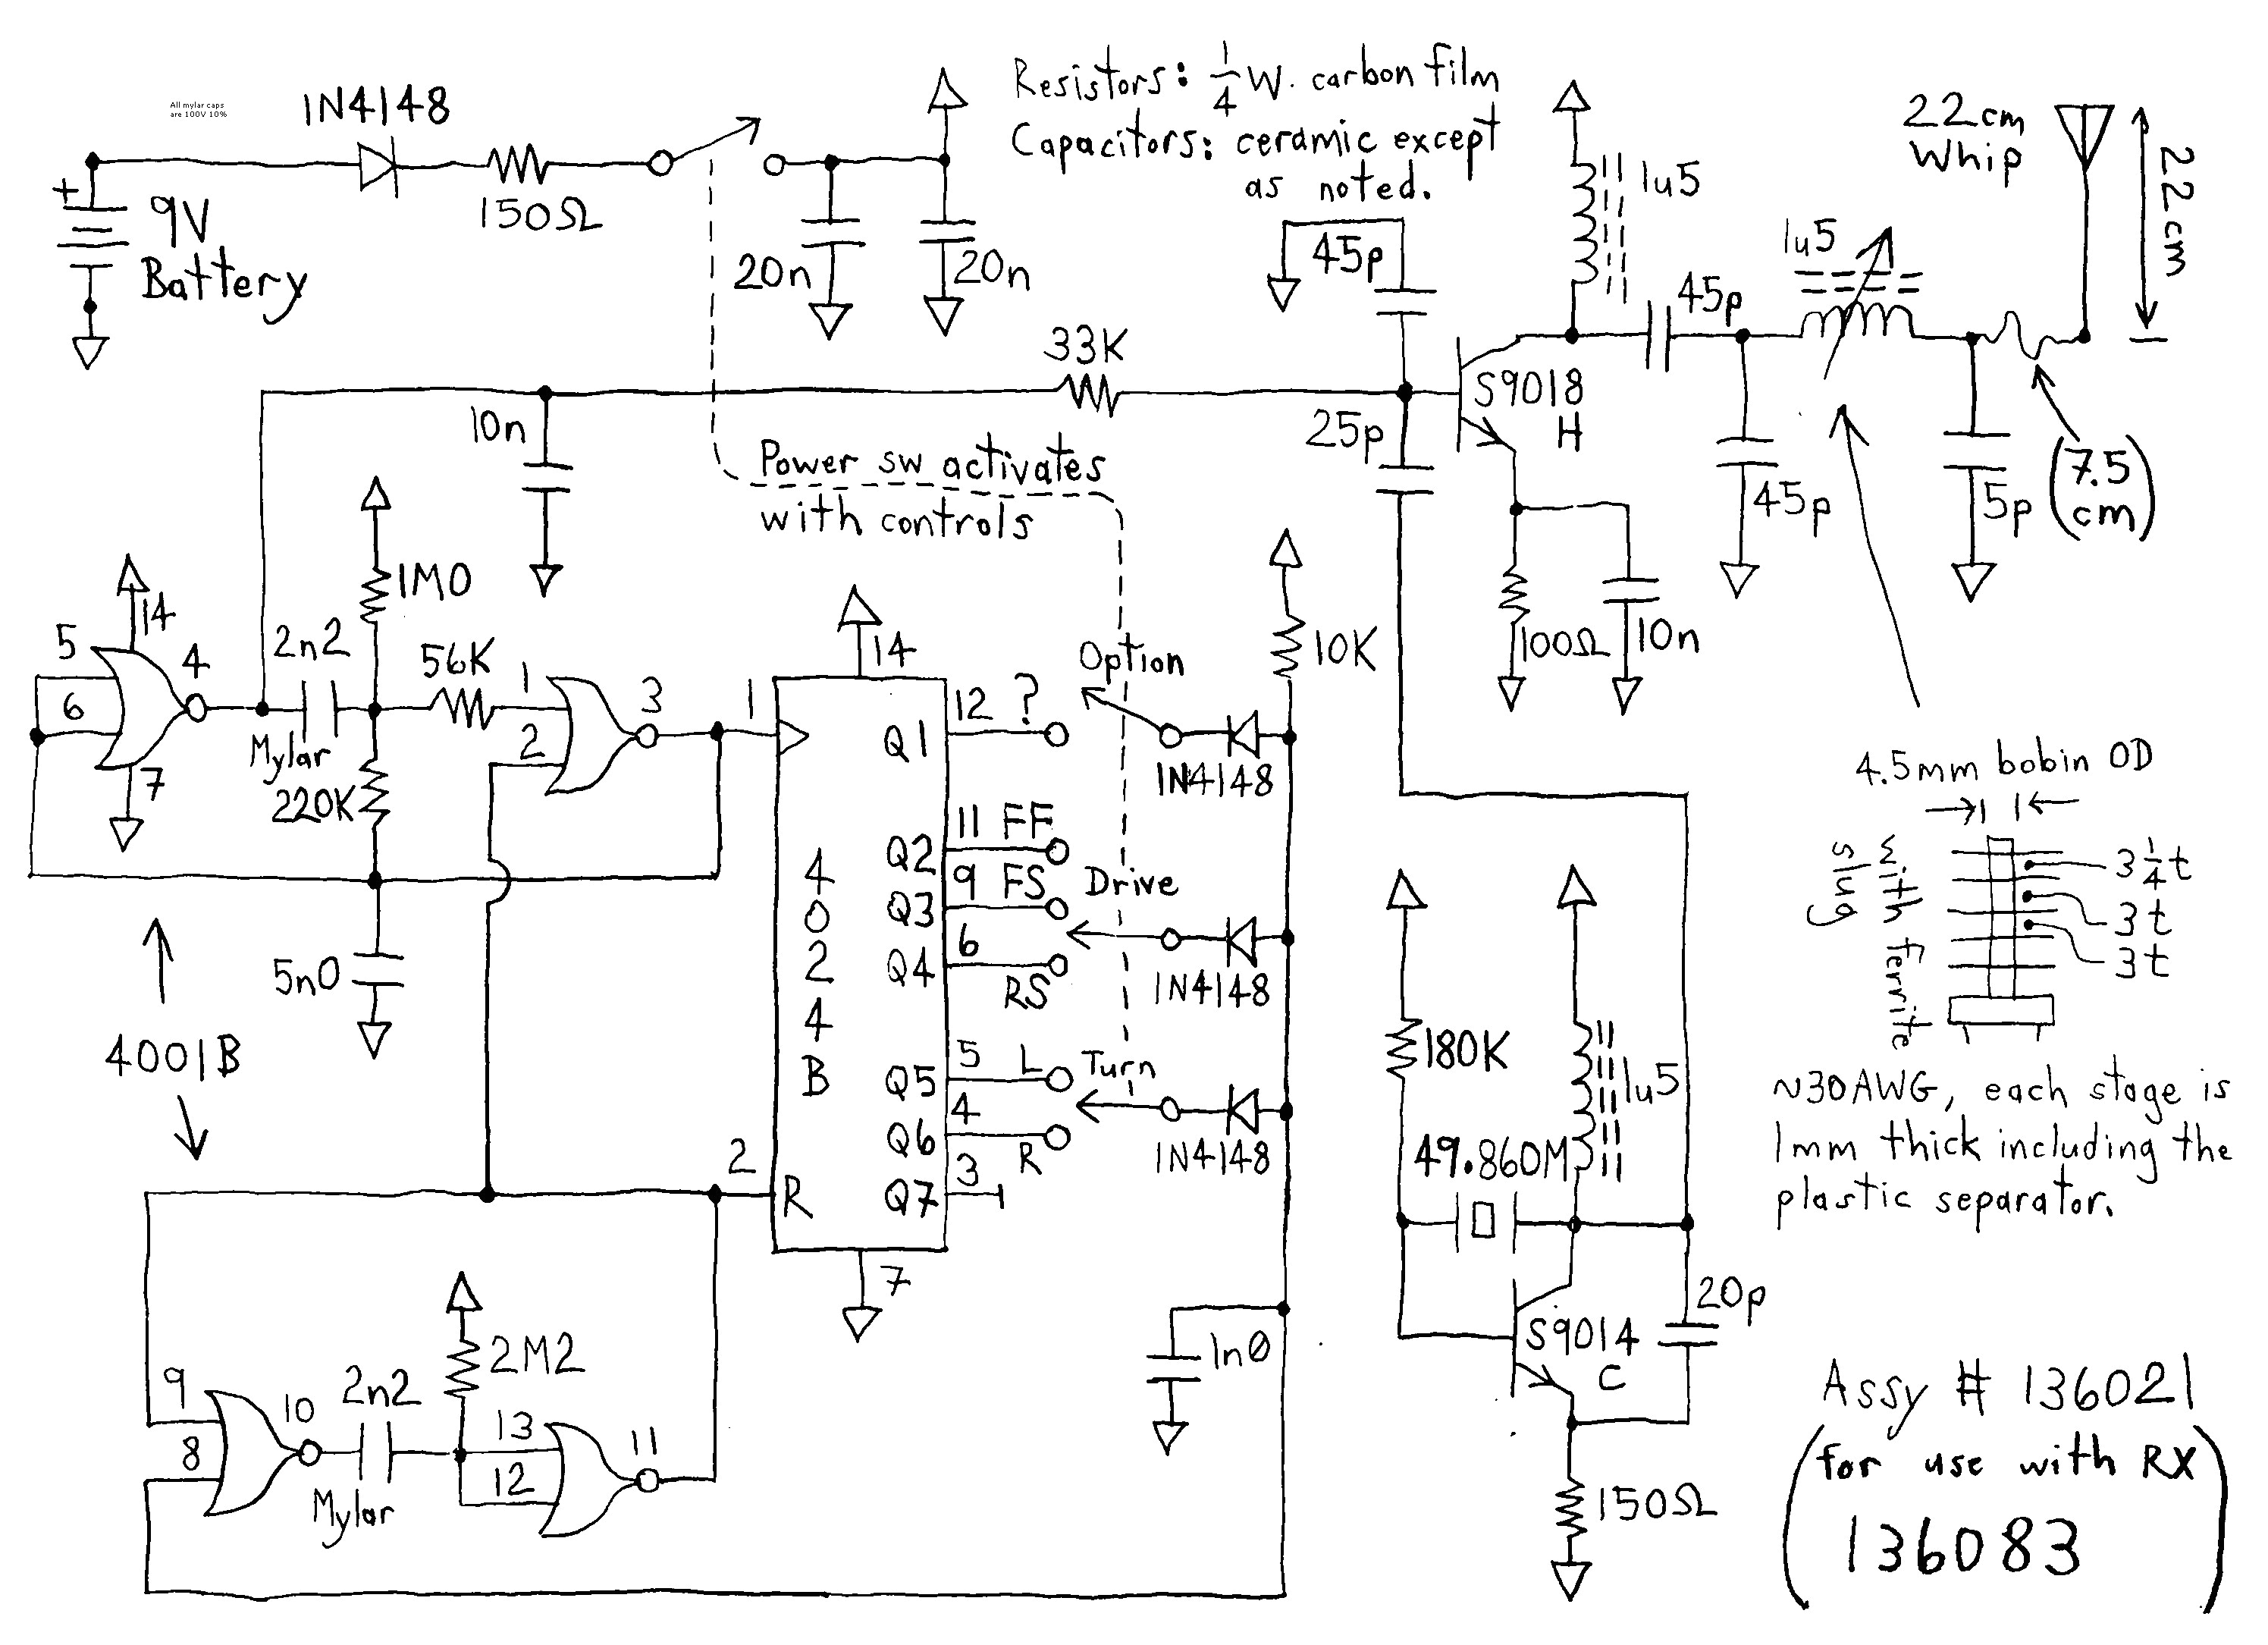 smc wiring diagram wiring diagram namesmc crossing arm wiring diagram wiring diagram schematic autronic smc wiring